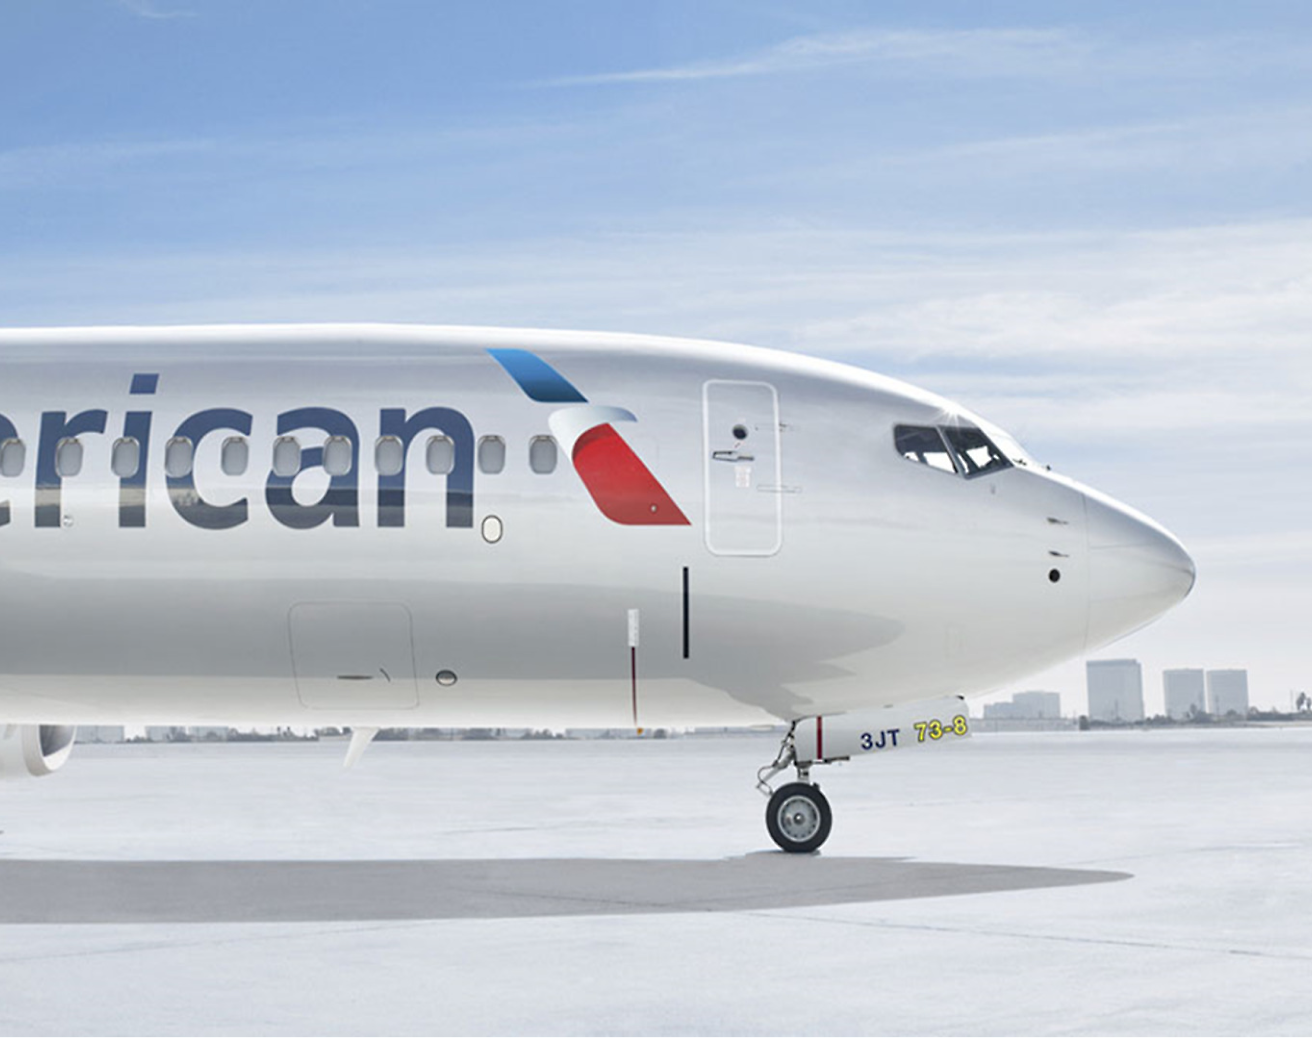 Frontansicht eines American Airlines-Flugzeugs, das auf dem Rollfeld unter einem klaren Himmel geparkt ist.